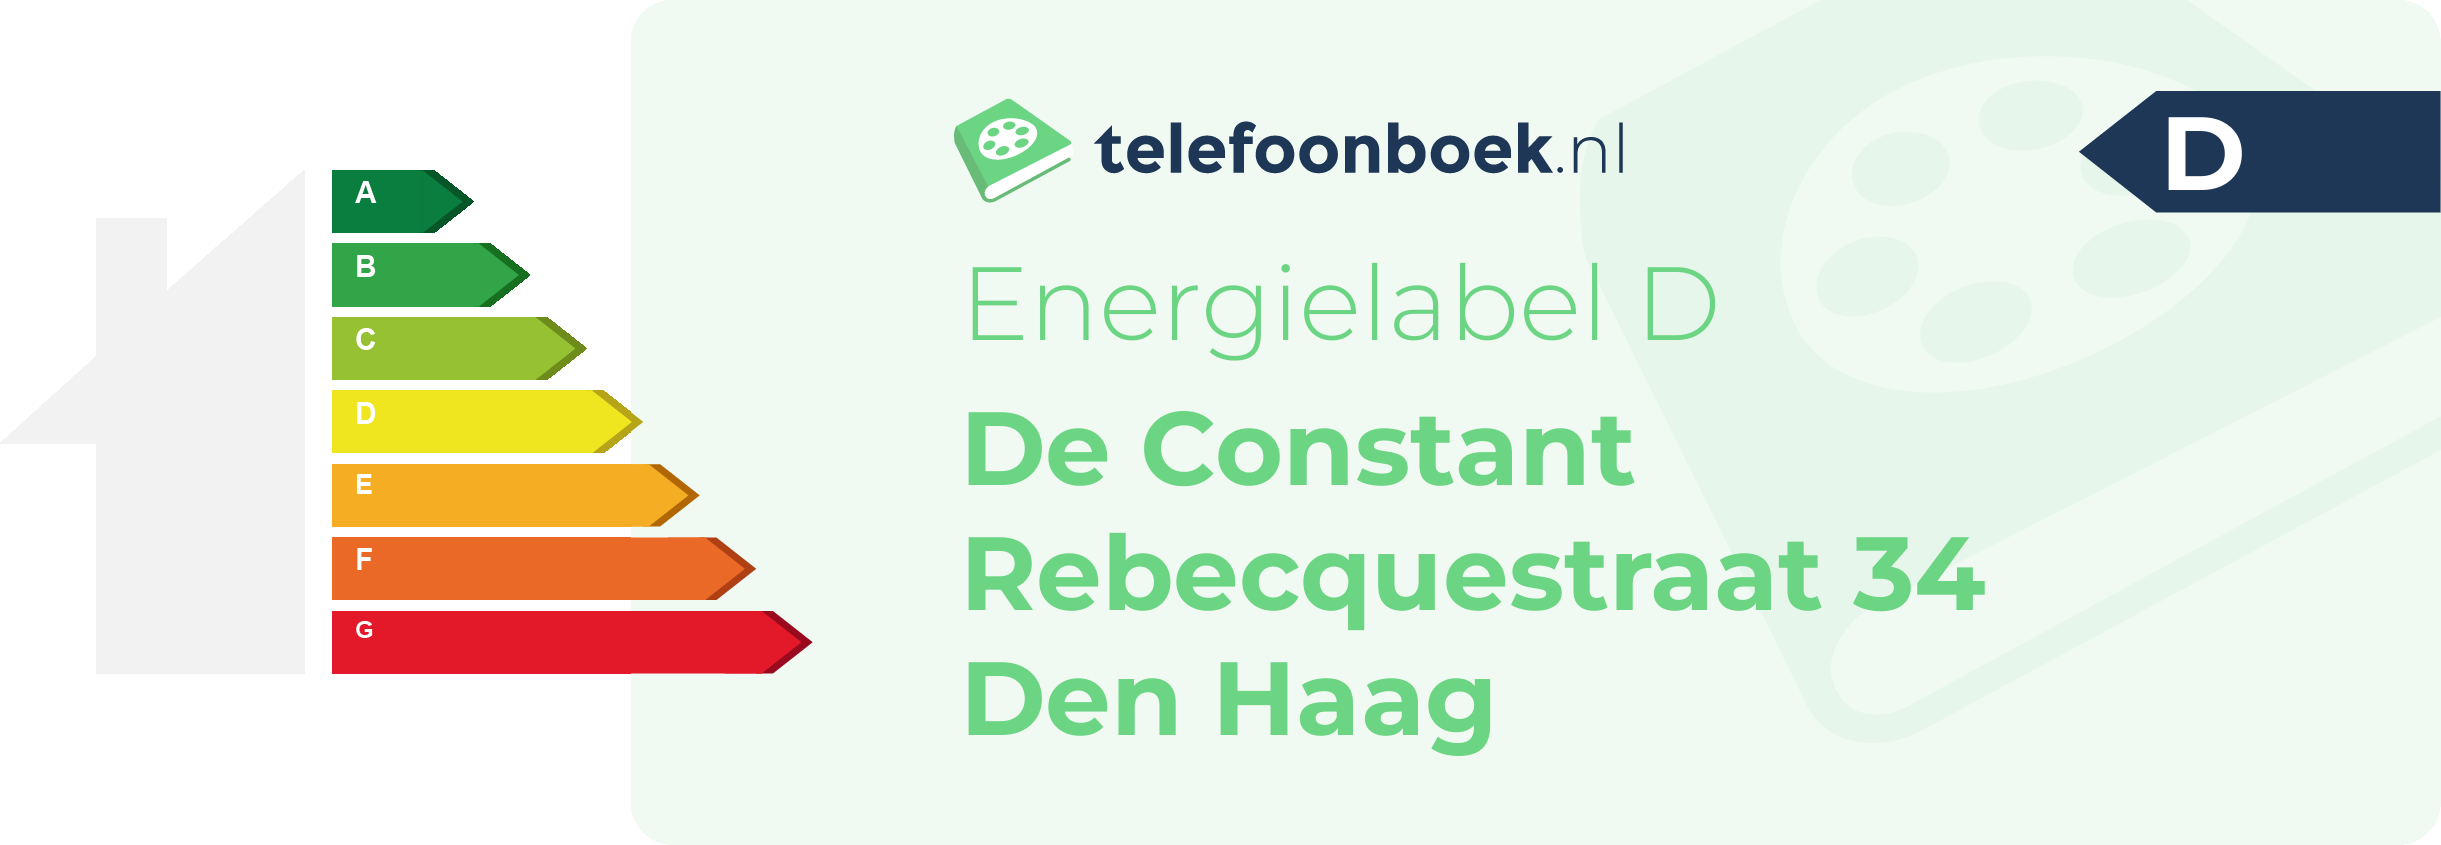 Energielabel De Constant Rebecquestraat 34 Den Haag